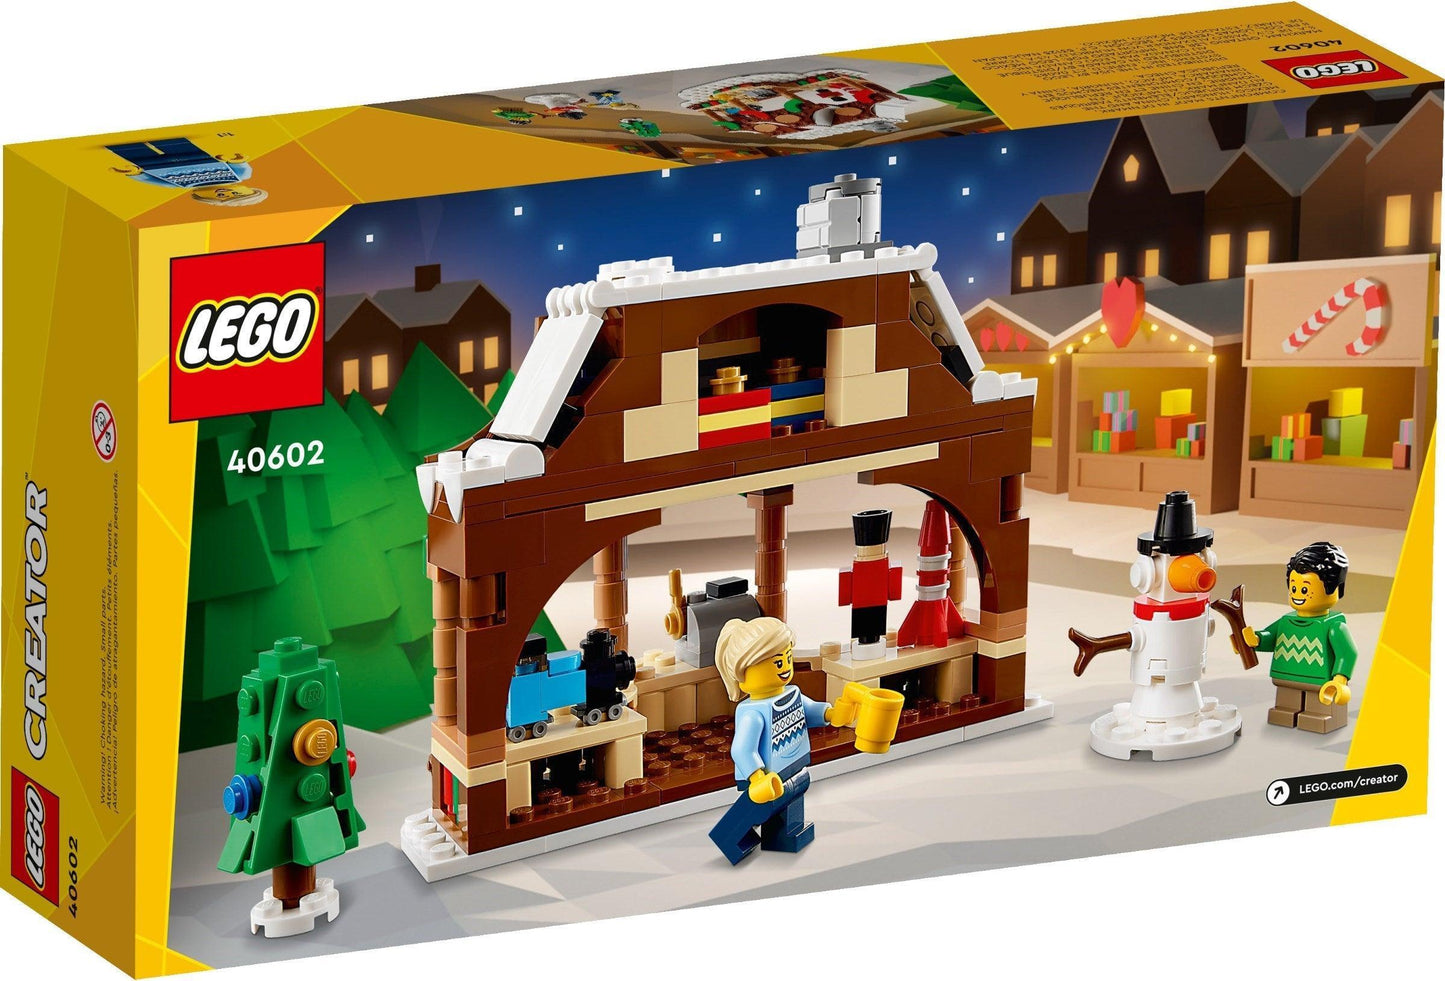 LEGO Winterse marktkraam 40602 Creator @ 2TTOYS 2TTOYS €. 9.99